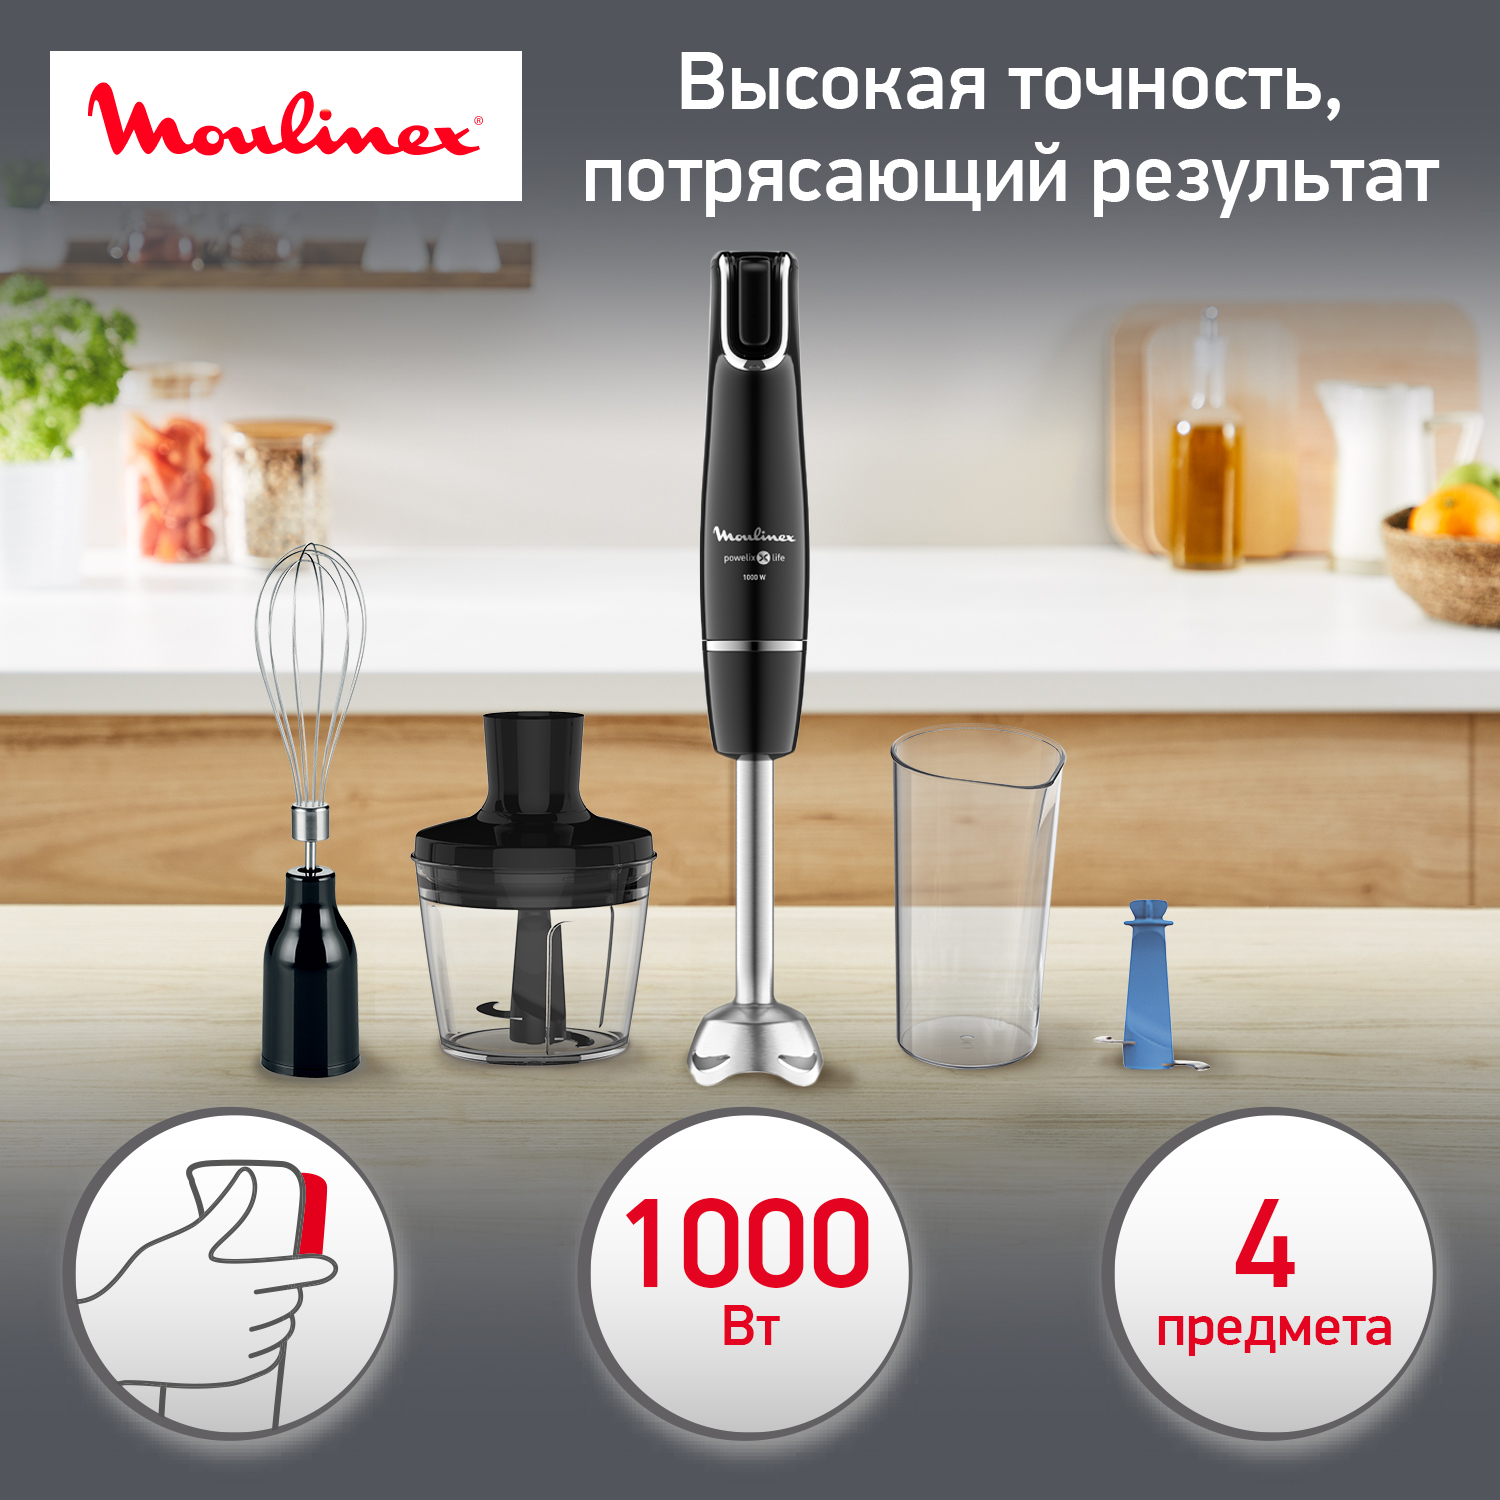 Погружной блендер Moulinex DD944810 Black, купить в Москве, цены в интернет-магазинах на Мегамаркет